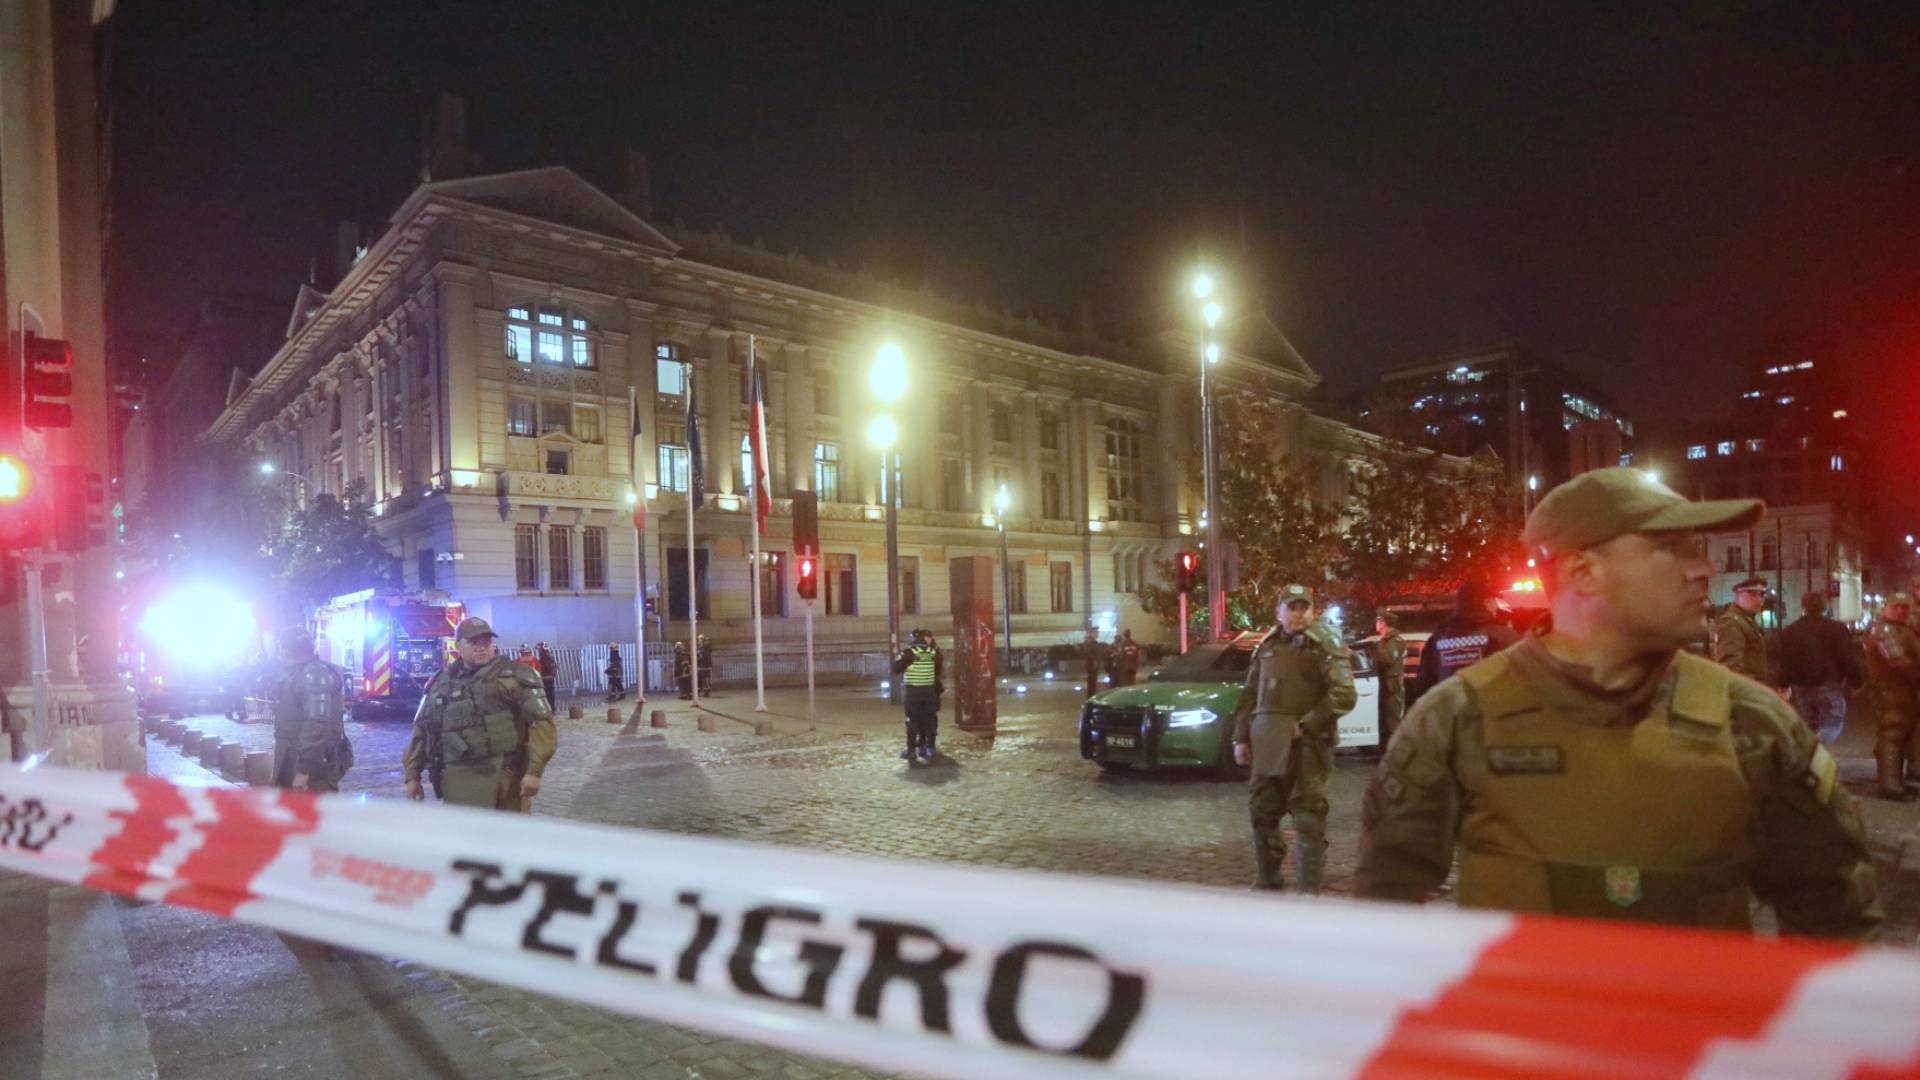 VIDEO – Incendio afecta al Palacio de Justicia en centro de Santiago